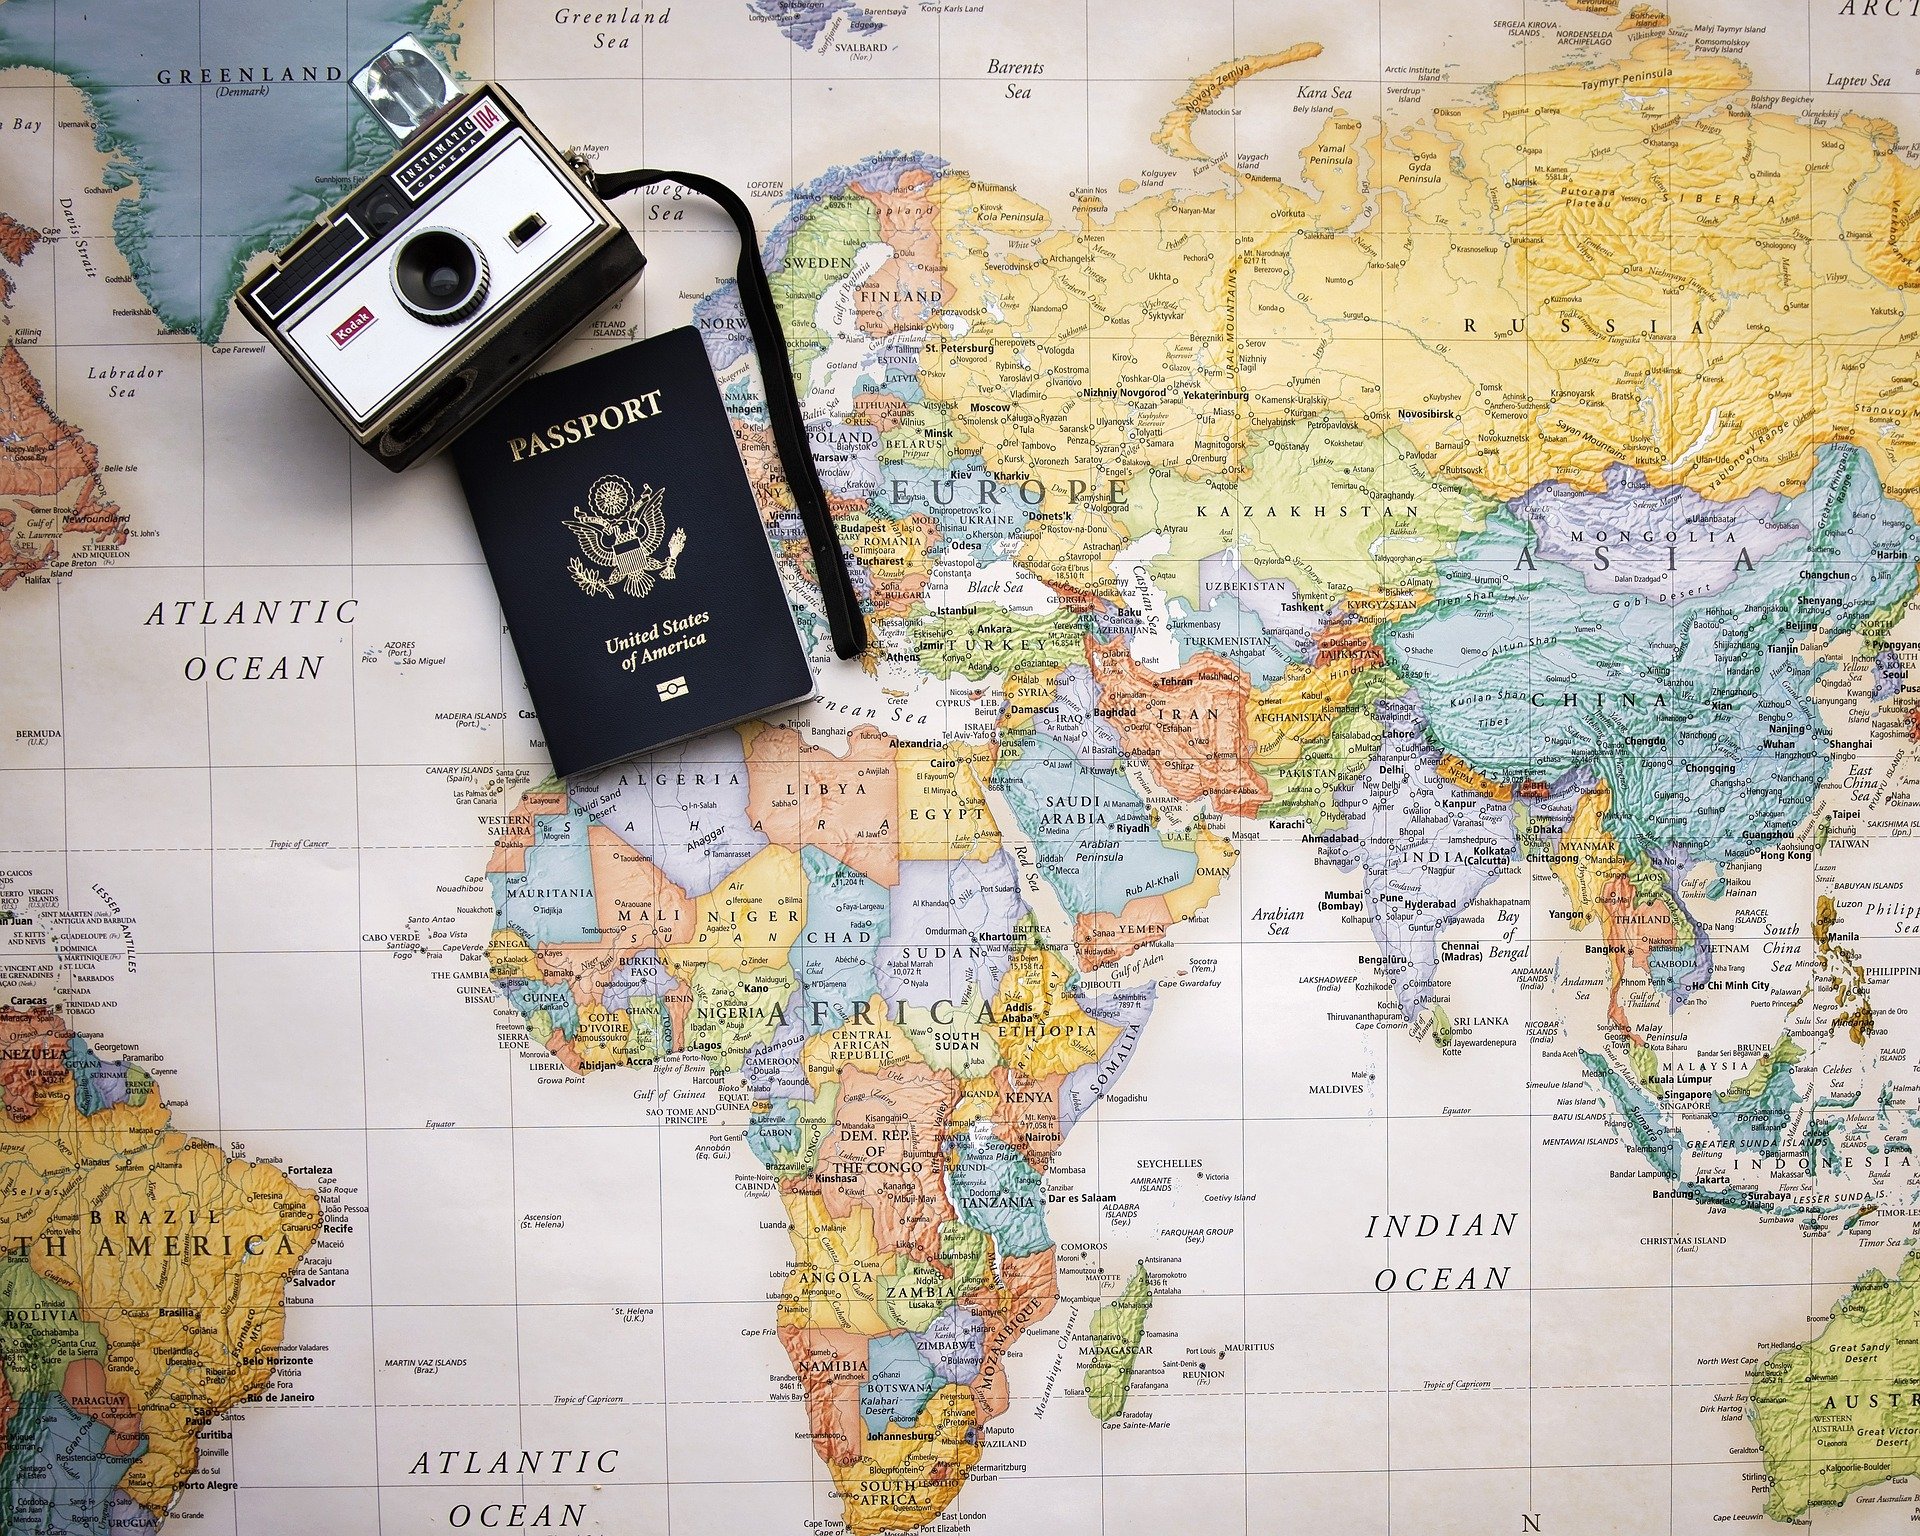 La Red de Destinos Turísticos Inteligentes incorpora a los primeros destinos internacionales